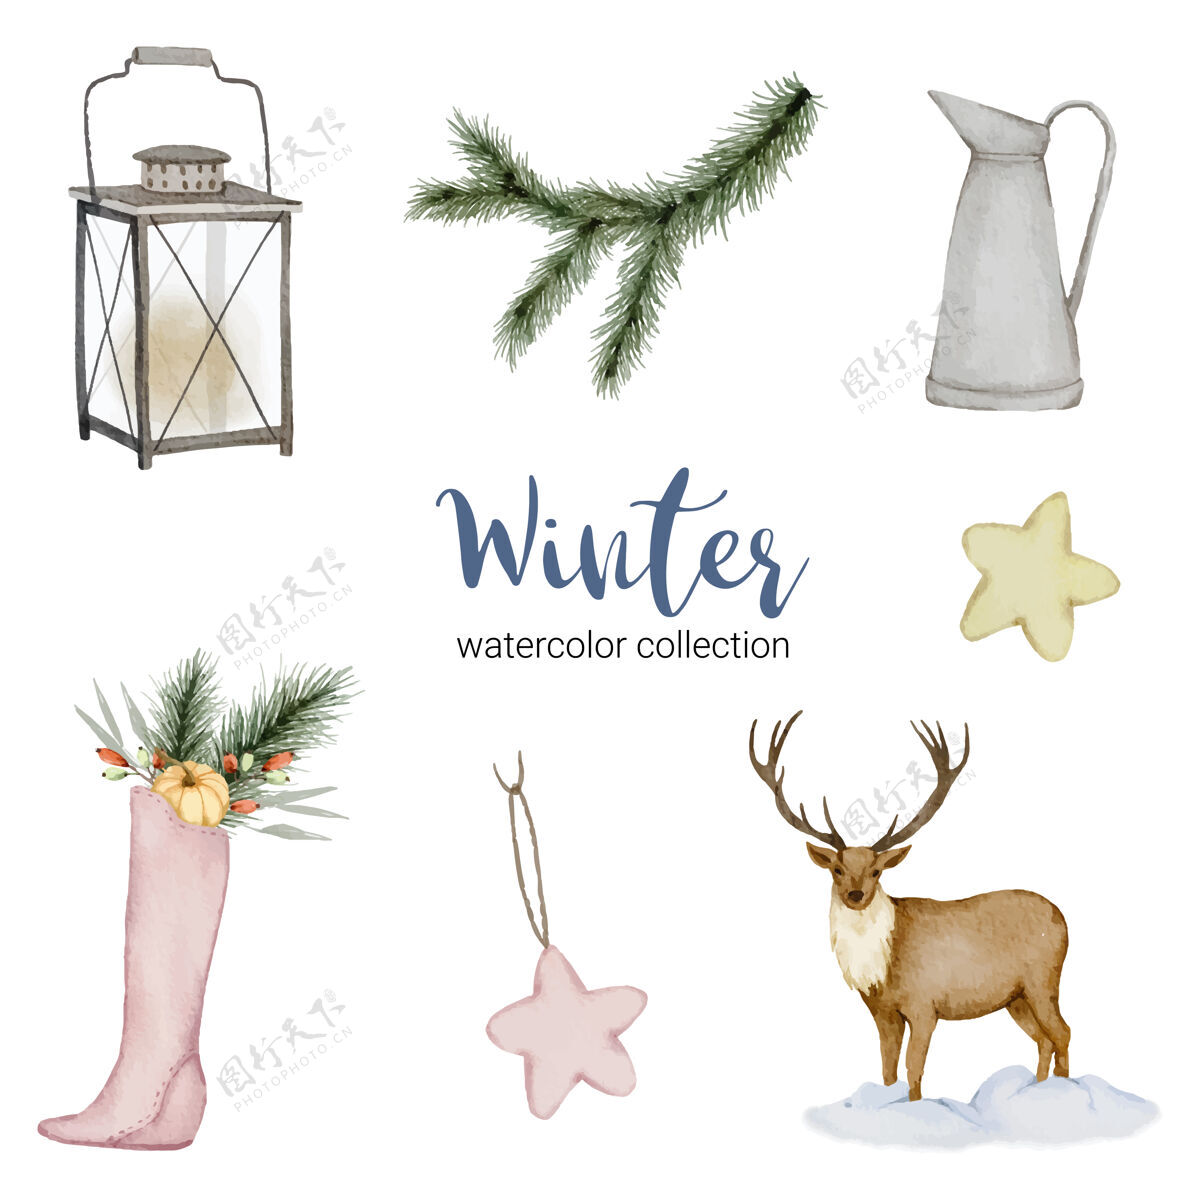 鹿冬季水彩系列 包括水壶 灯笼 鹿和鞋子花朵框架水彩